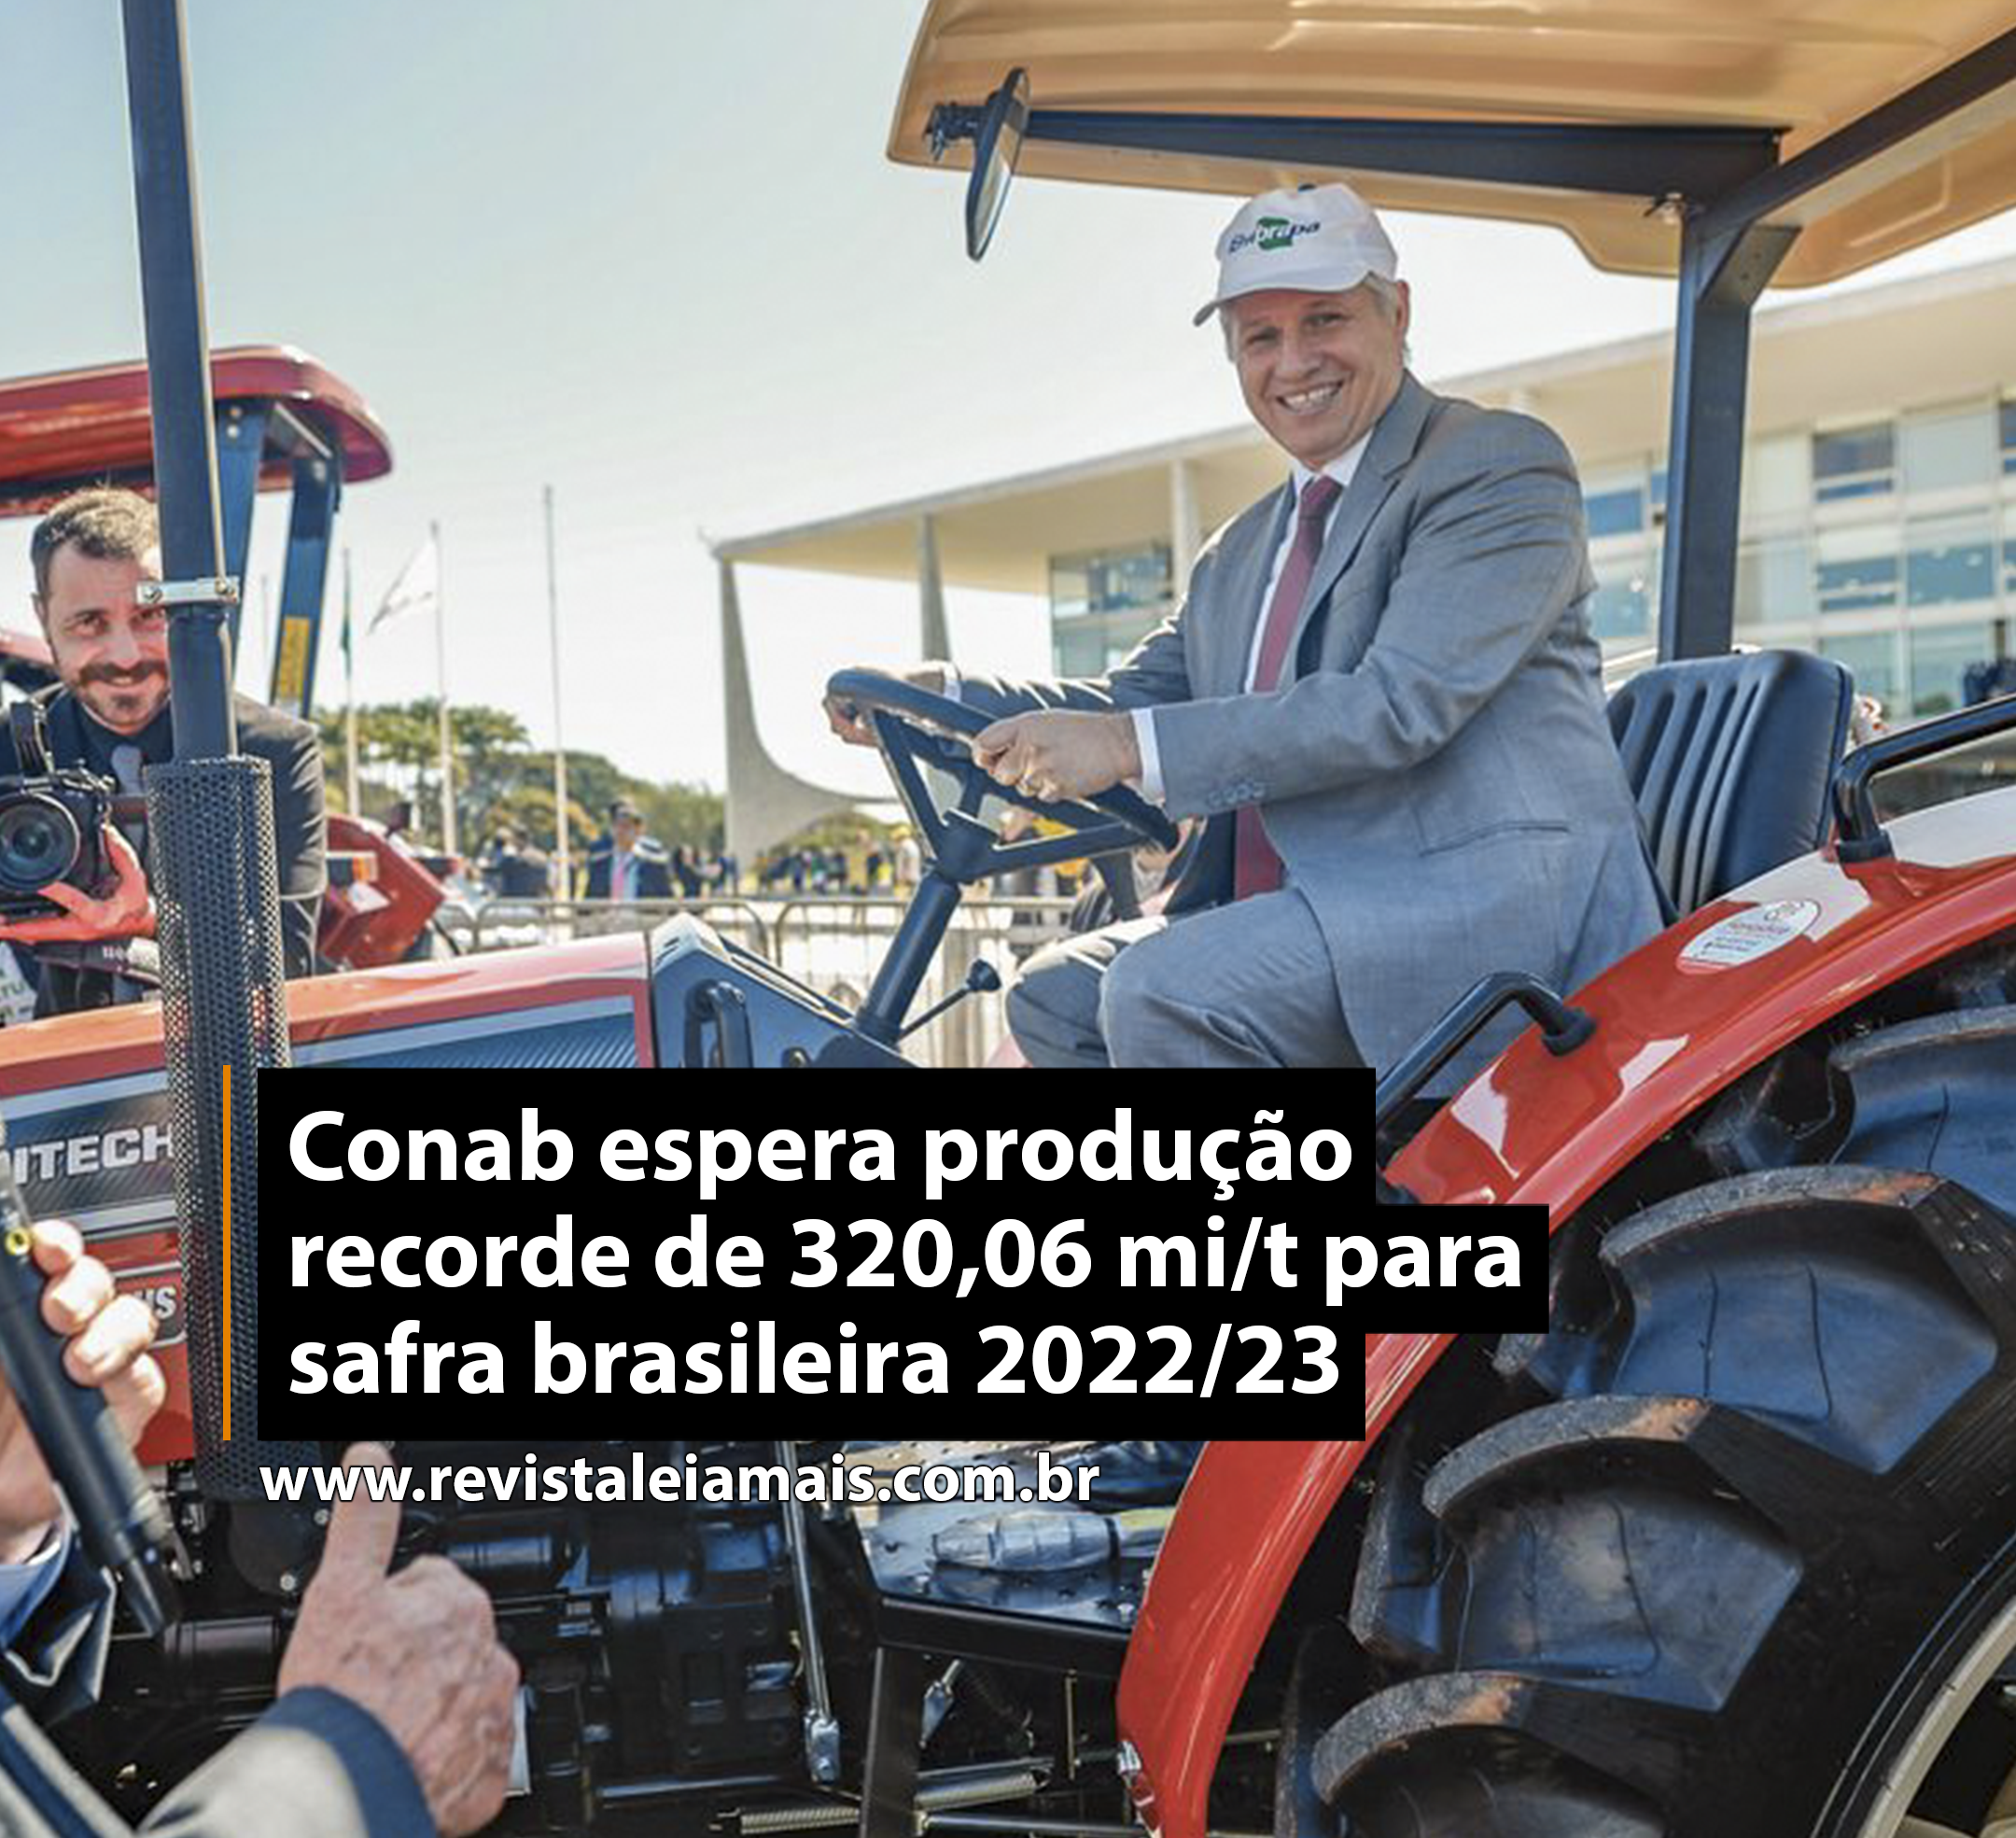 Conab espera produção recorde de 320,06 mi/t para safra brasileira 2022/23